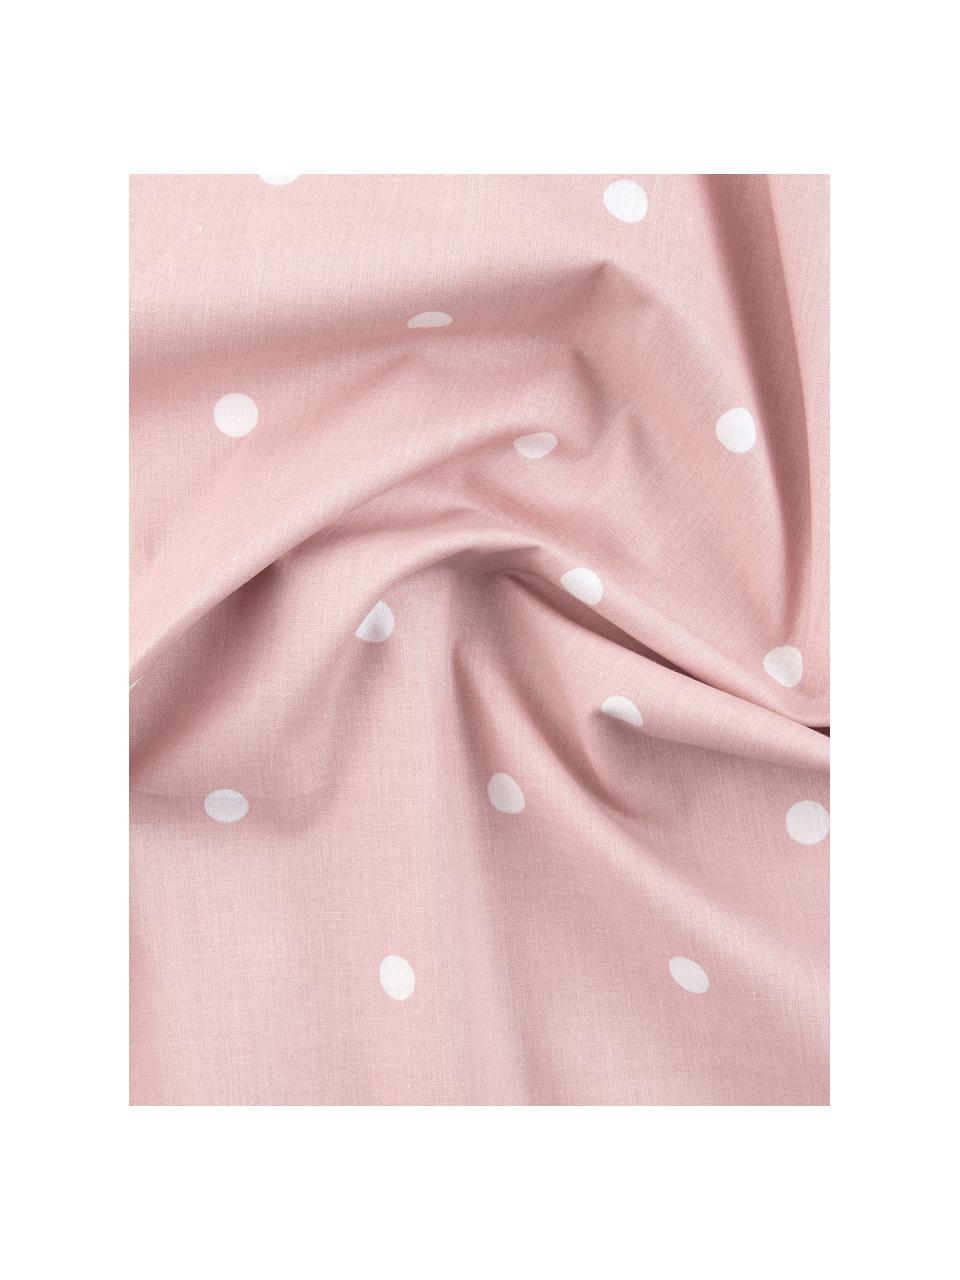 Gepunktete Baumwoll-Kissenbezüge Dotty in Rosa/Weiß, 2 Stück, Webart: Renforcé Fadendichte 144 , Rosa, Weiß, 40 x 80 cm